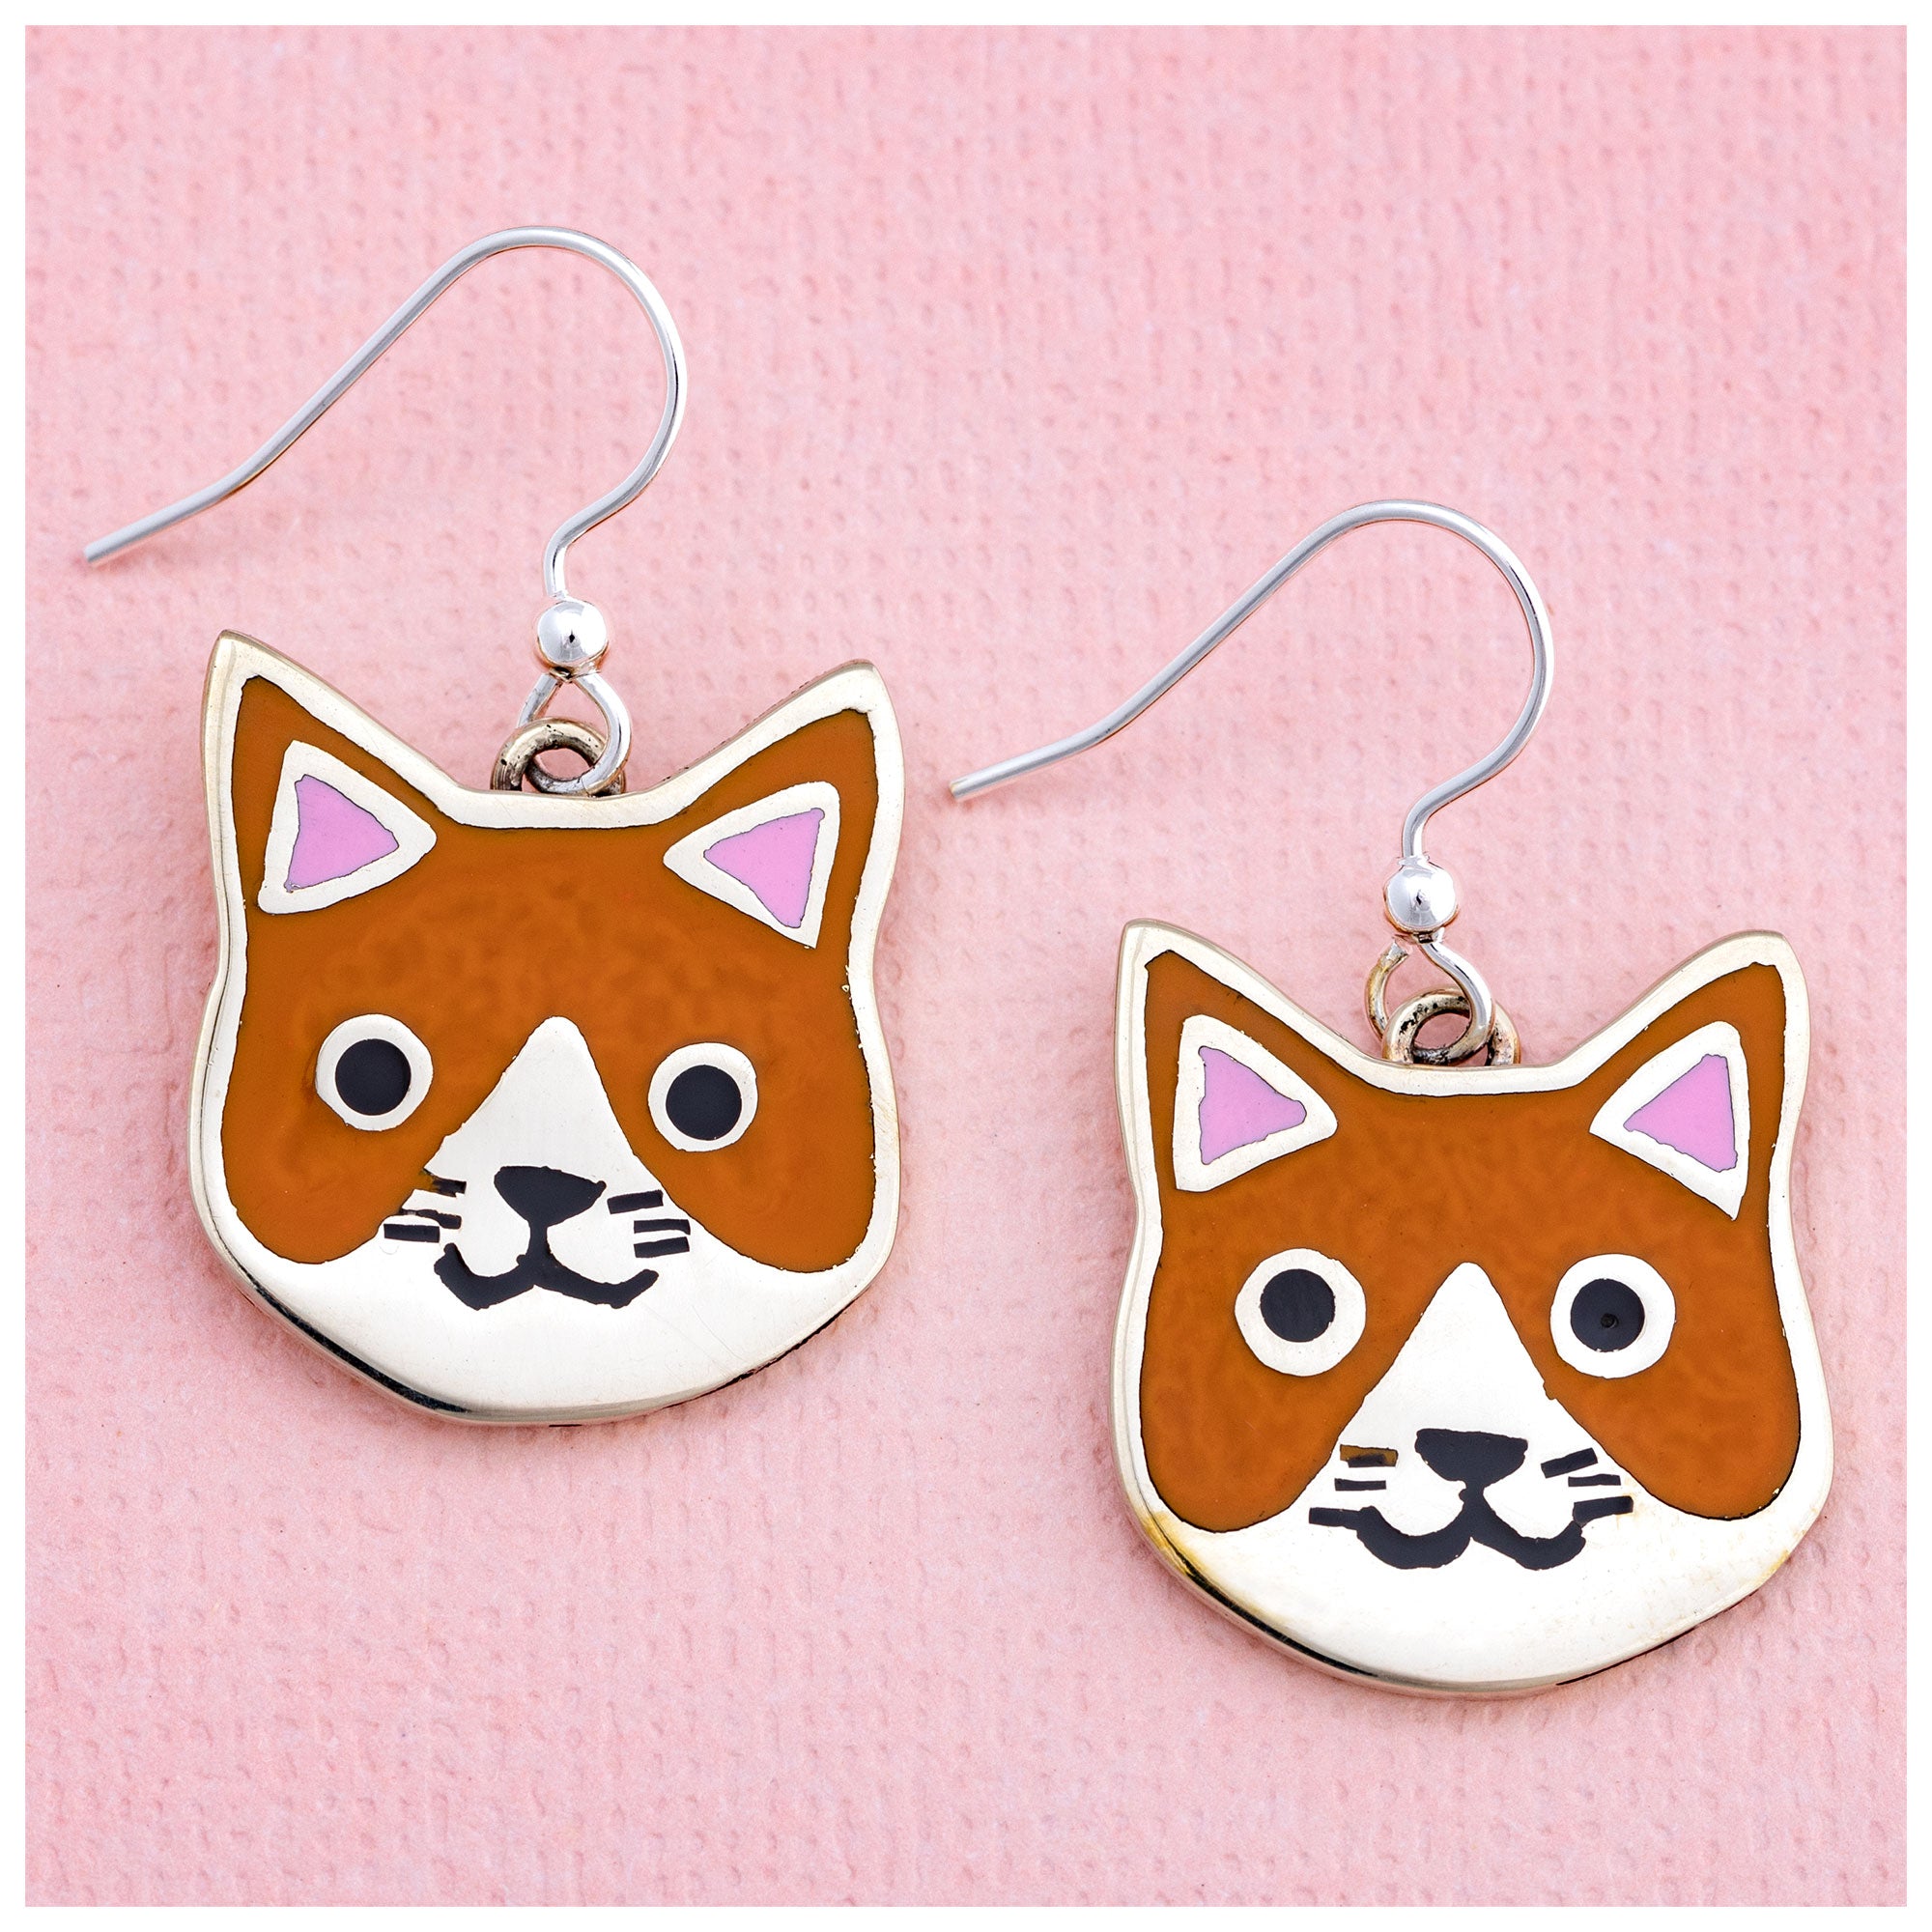 Hand Painted Cat Earrings - Orange Tabby